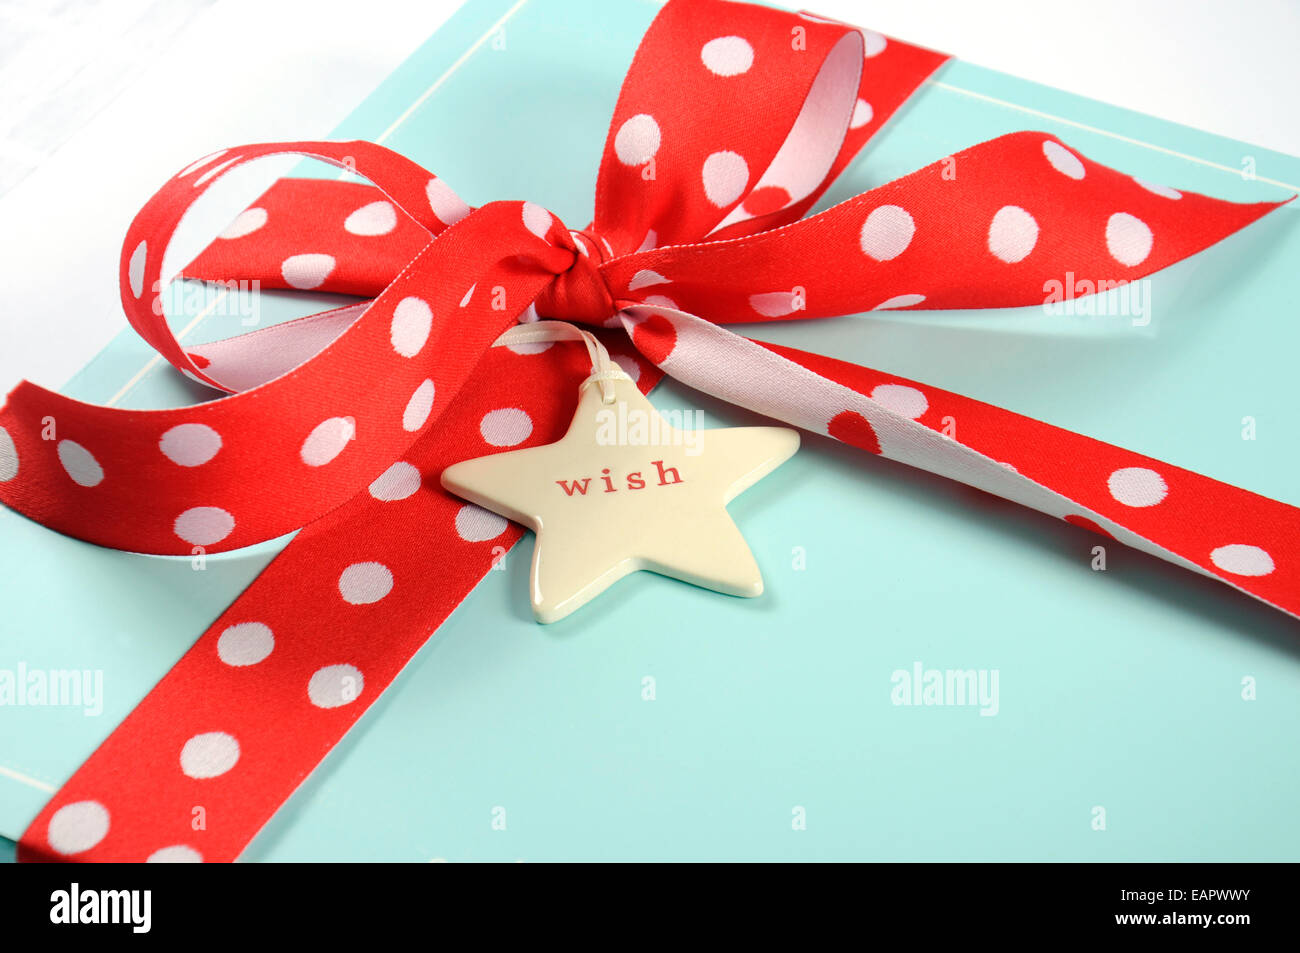 Bonnes fêtes de Noël festive aqua bleu pâle boîte-cadeau enveloppé de ruban rouge à pois, gros plan. Banque D'Images